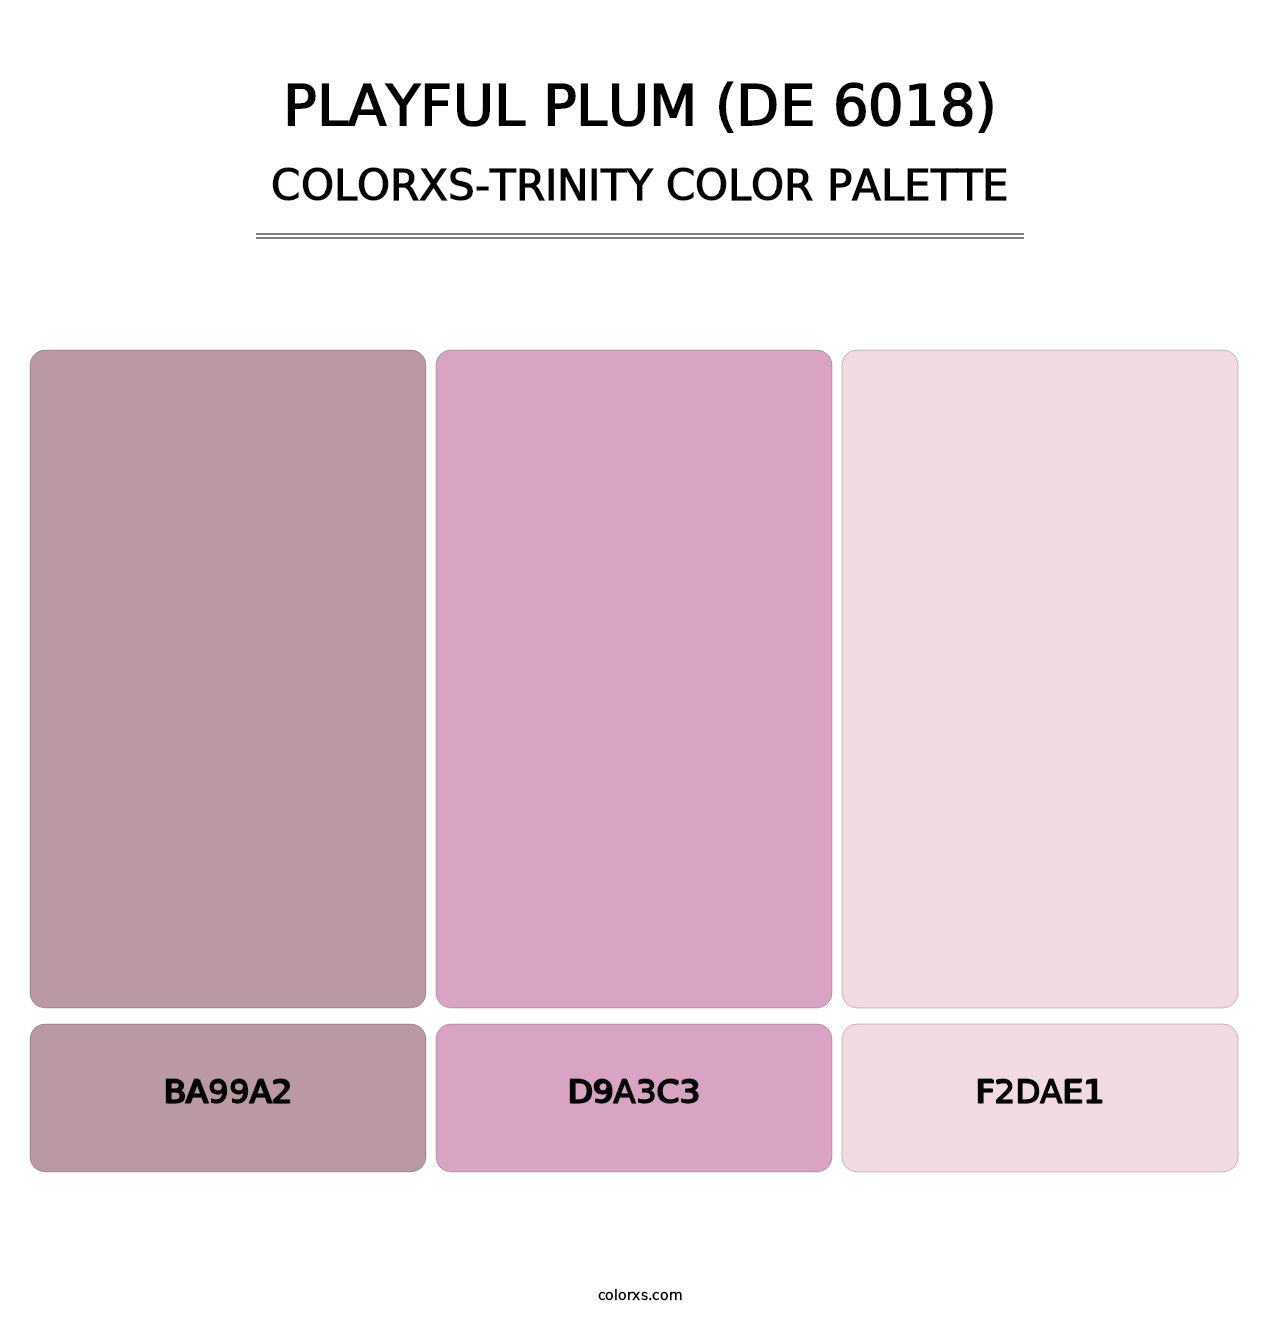 Playful Plum (DE 6018) - Colorxs Trinity Palette